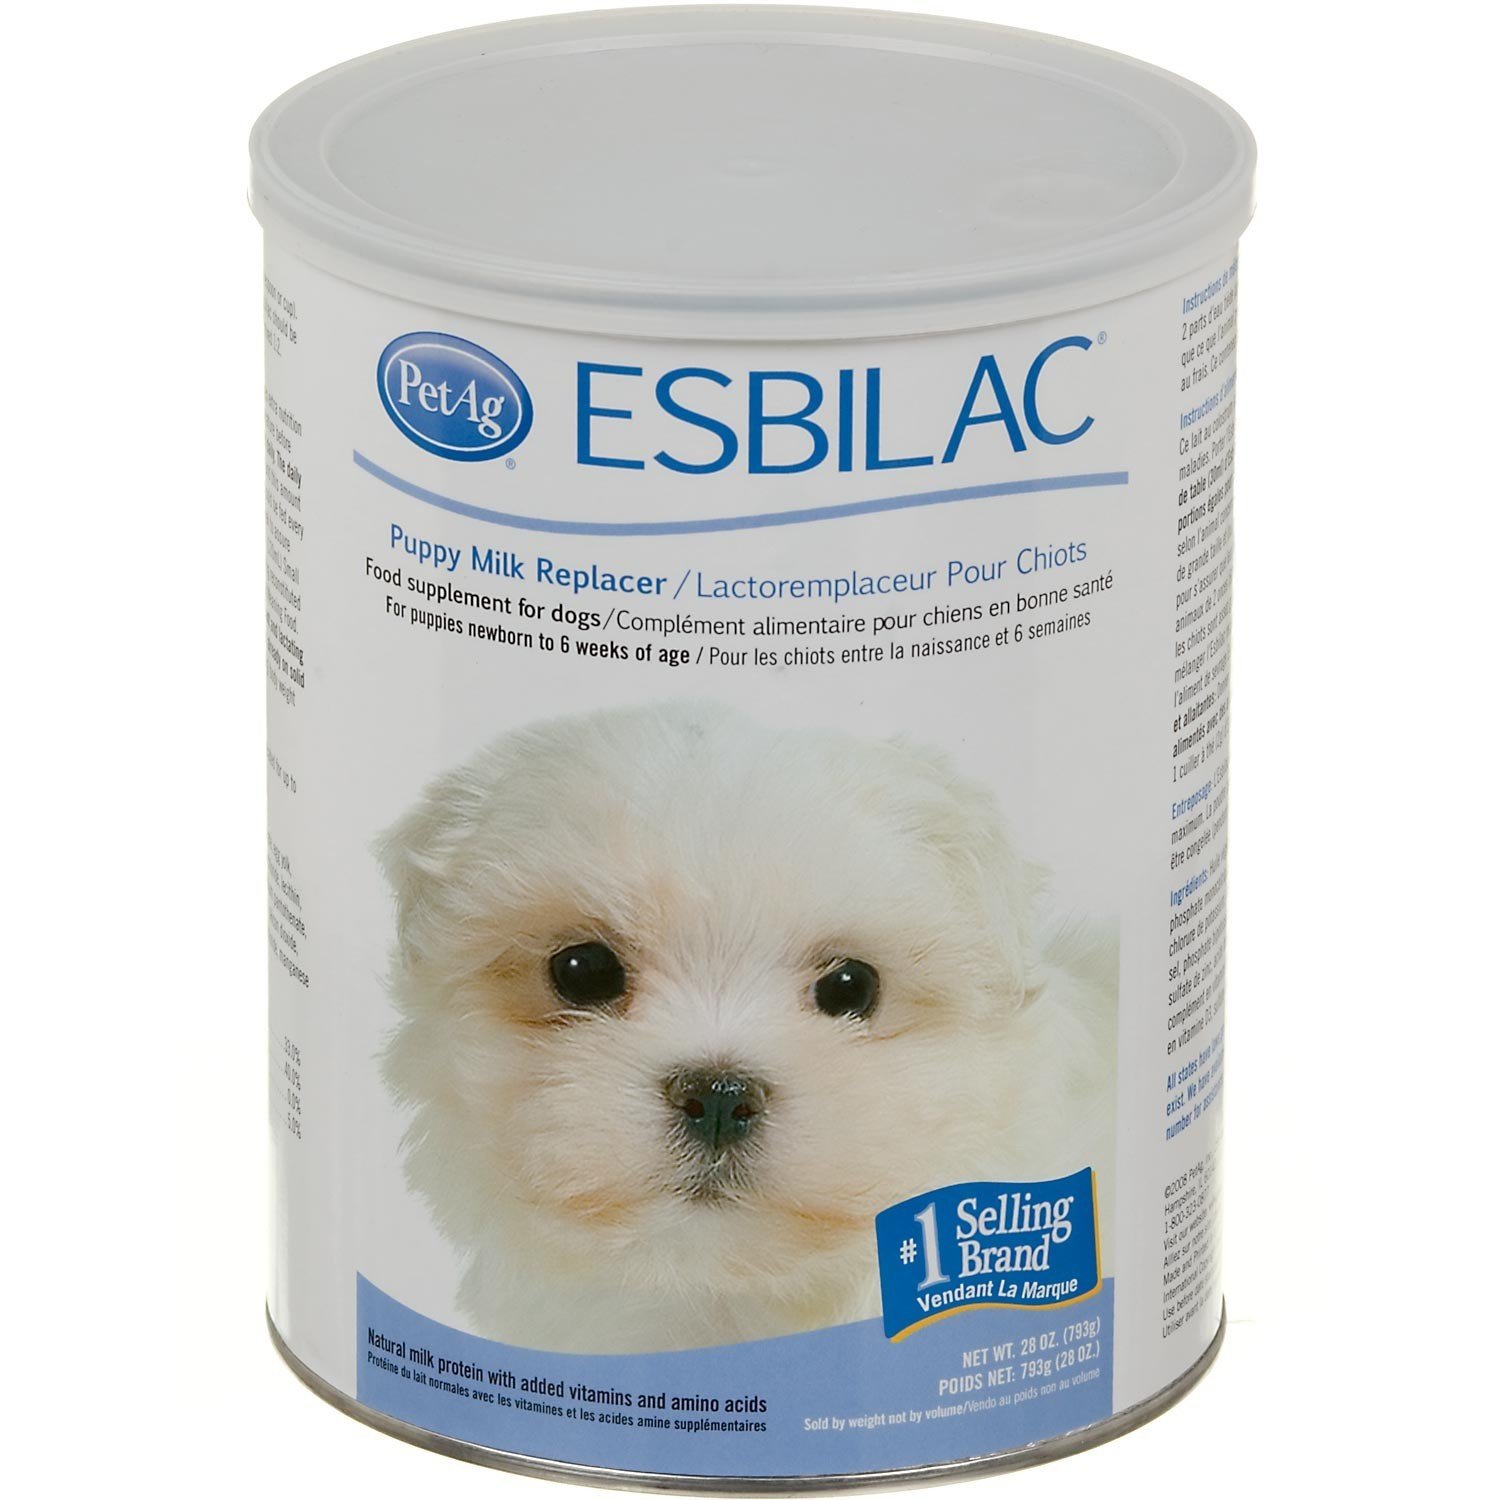 PetAg Puppy Milk Replacer Esbilac - заменитель молока для щенков с 0 мес.(порошок) 340гр. (США) (срок 08.2020г.)